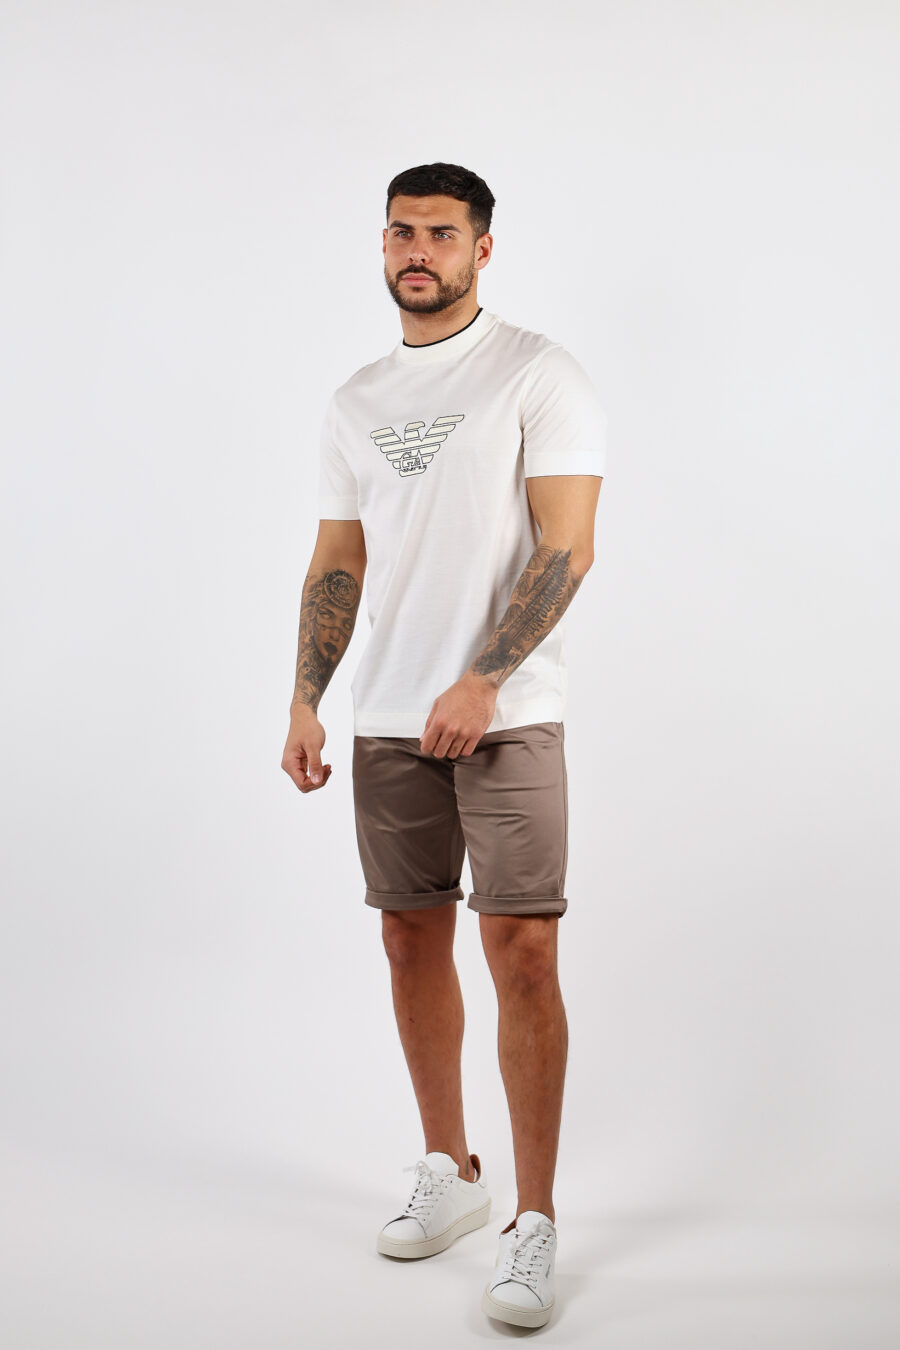 Cremefarbenes T-Shirt mit zentriertem Adler-Maxilogo - BLS Fashion 76